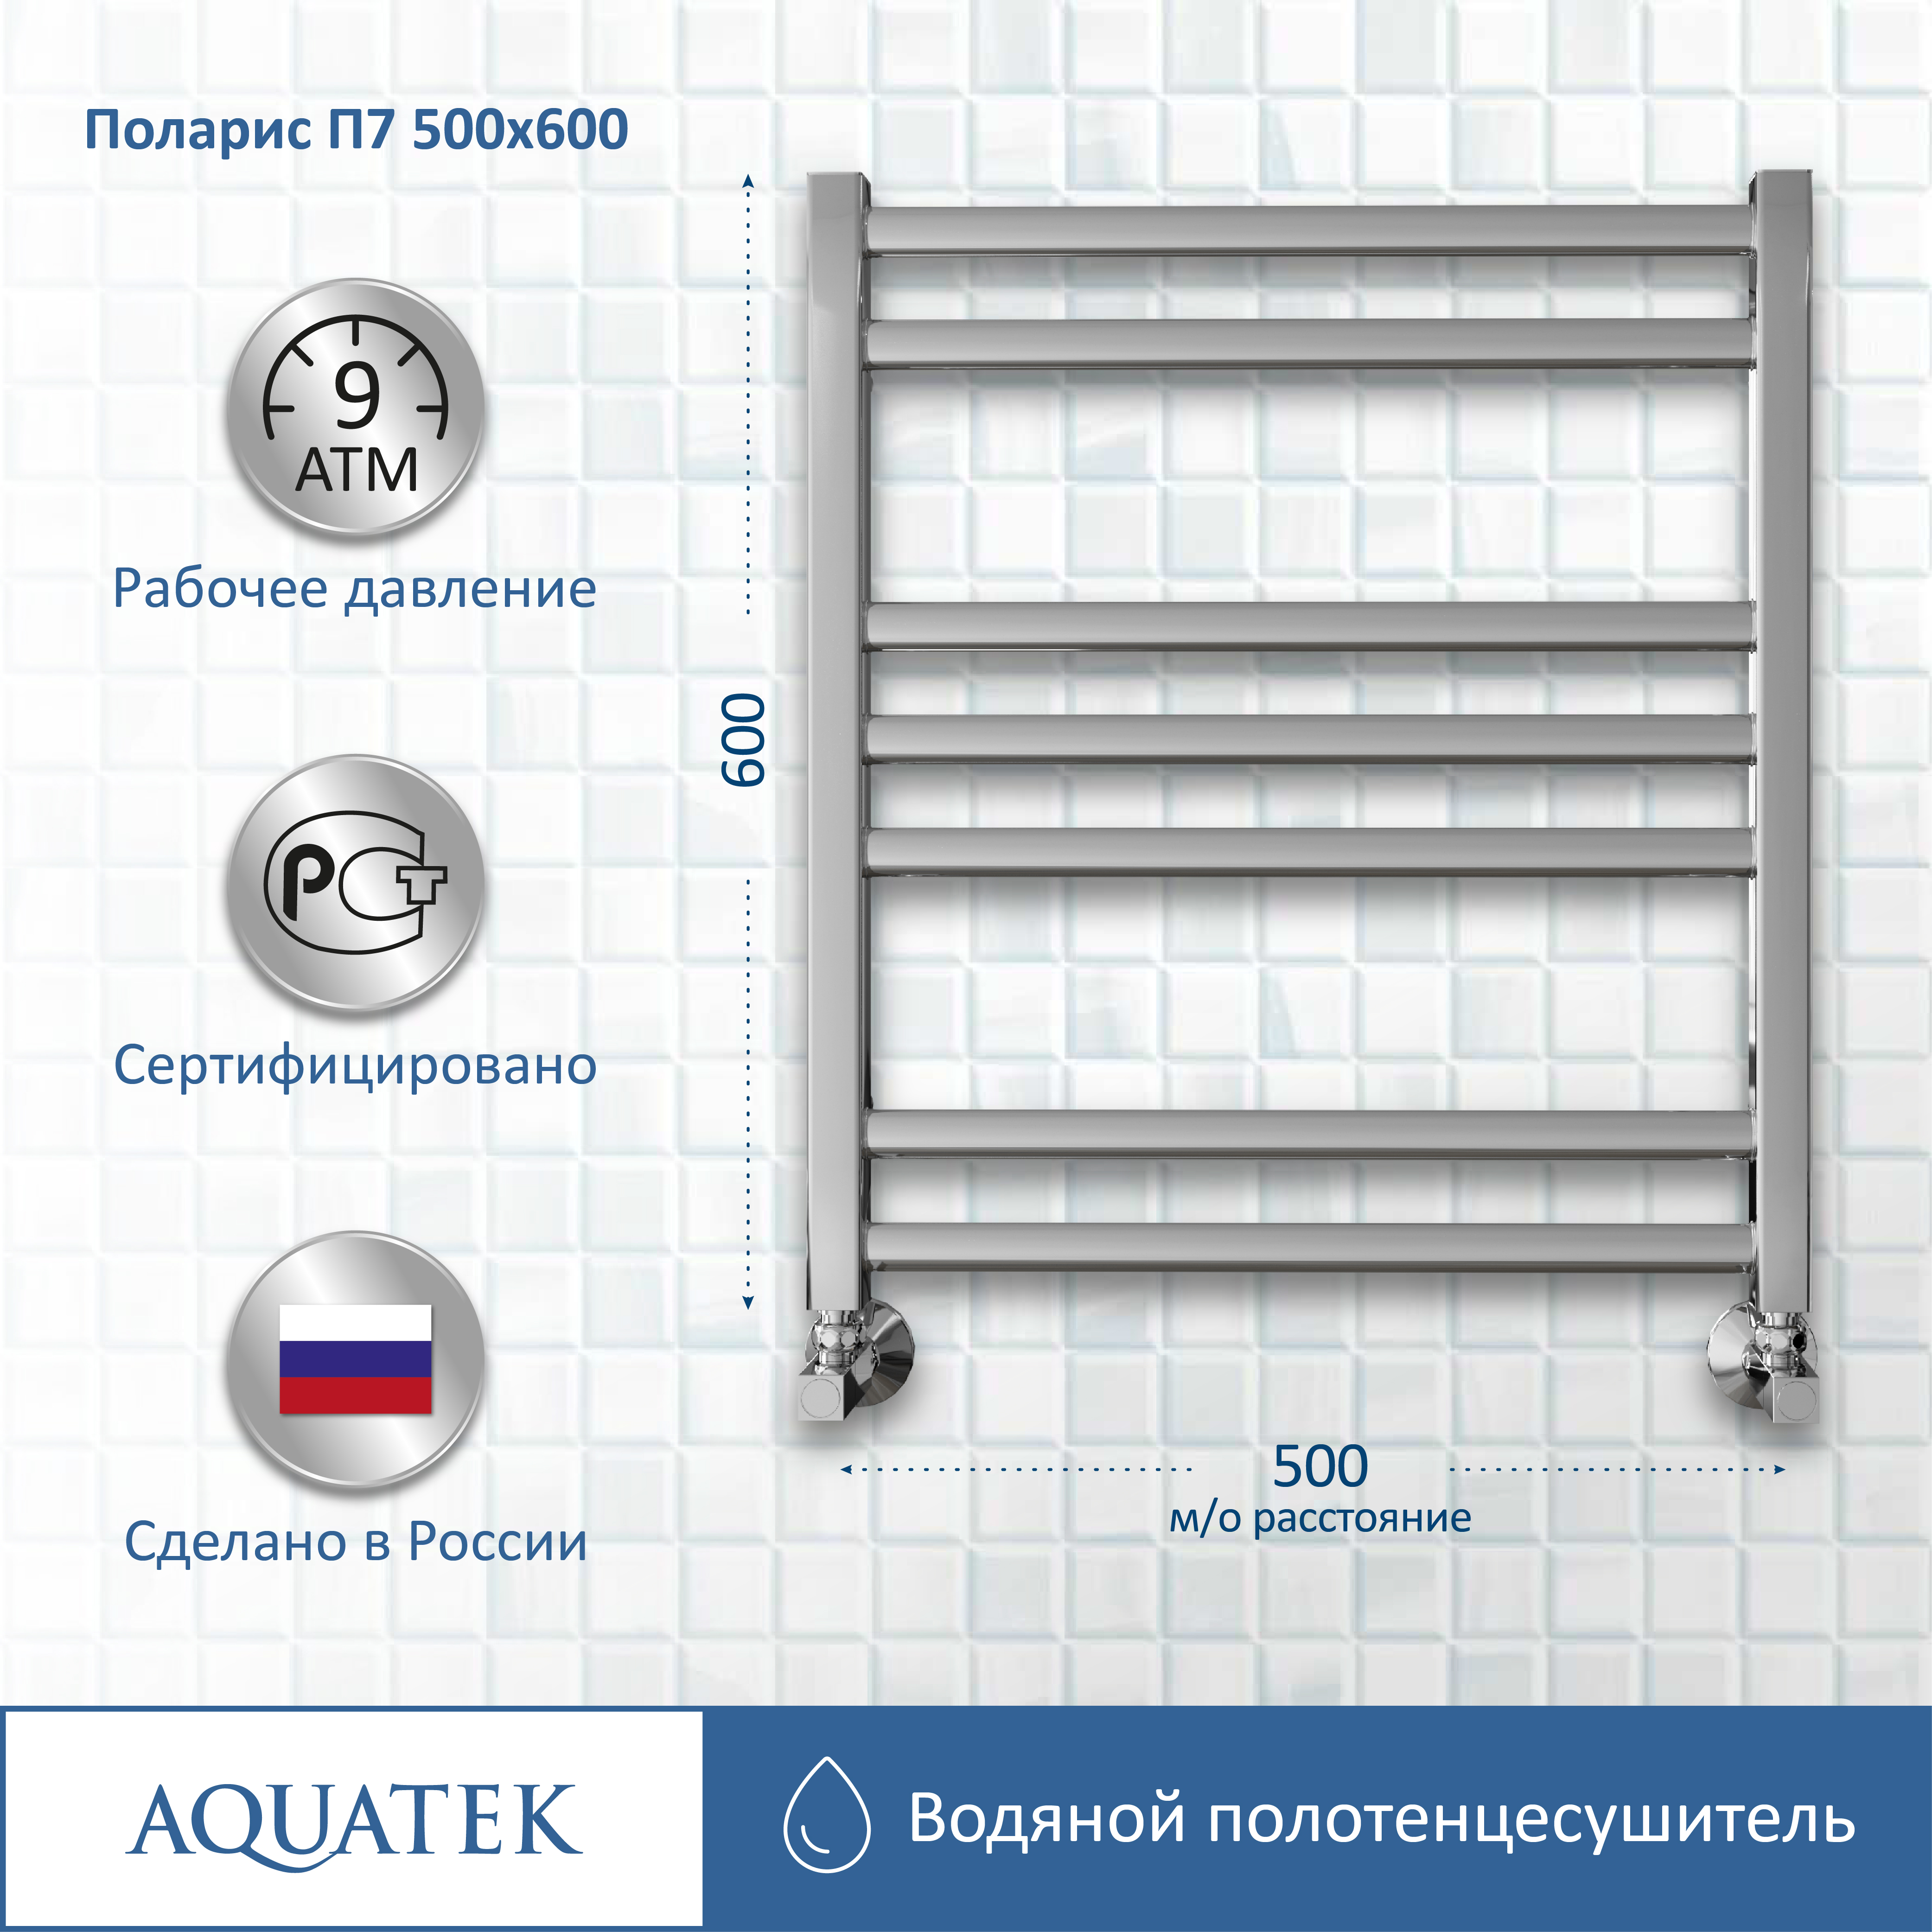 Полотенцесушитель водяной Aquatek Поларис П7 500х600 AQ KO0760CH - 11